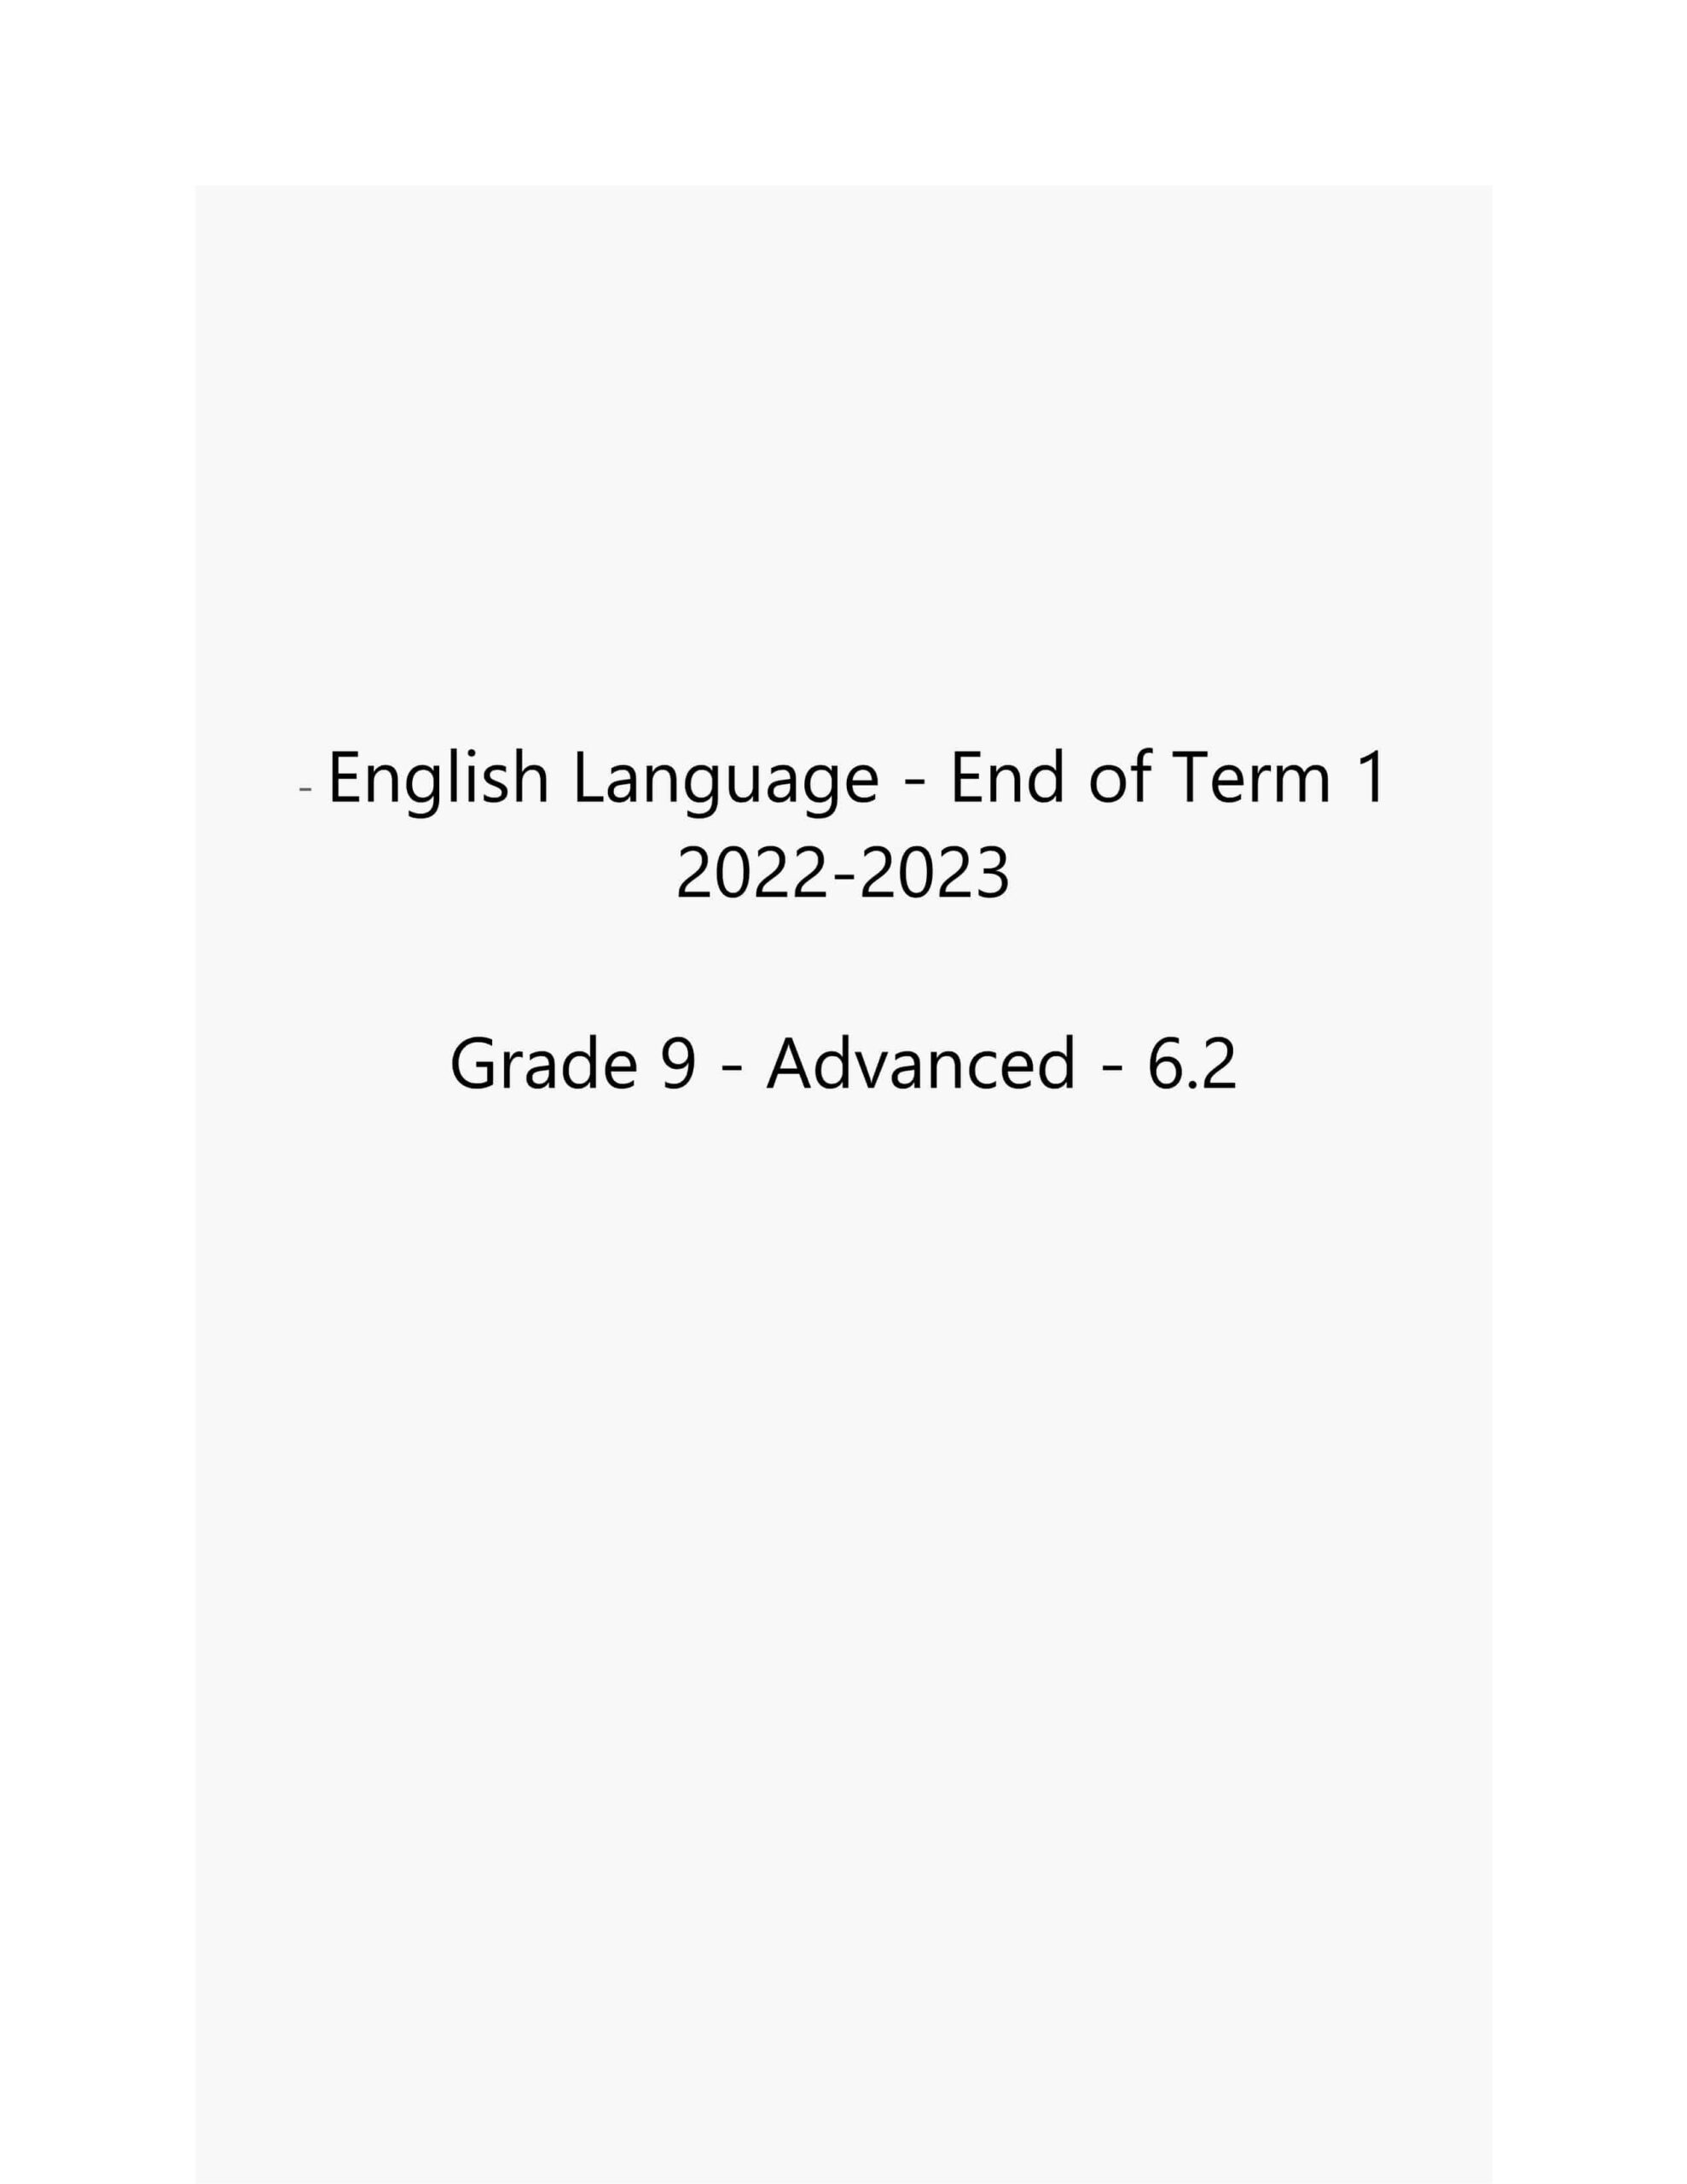 حل امتحان نهاية الفصل الدراسي الأول اللغة الإنجليزية الصف التاسع متقدم 2022-2023